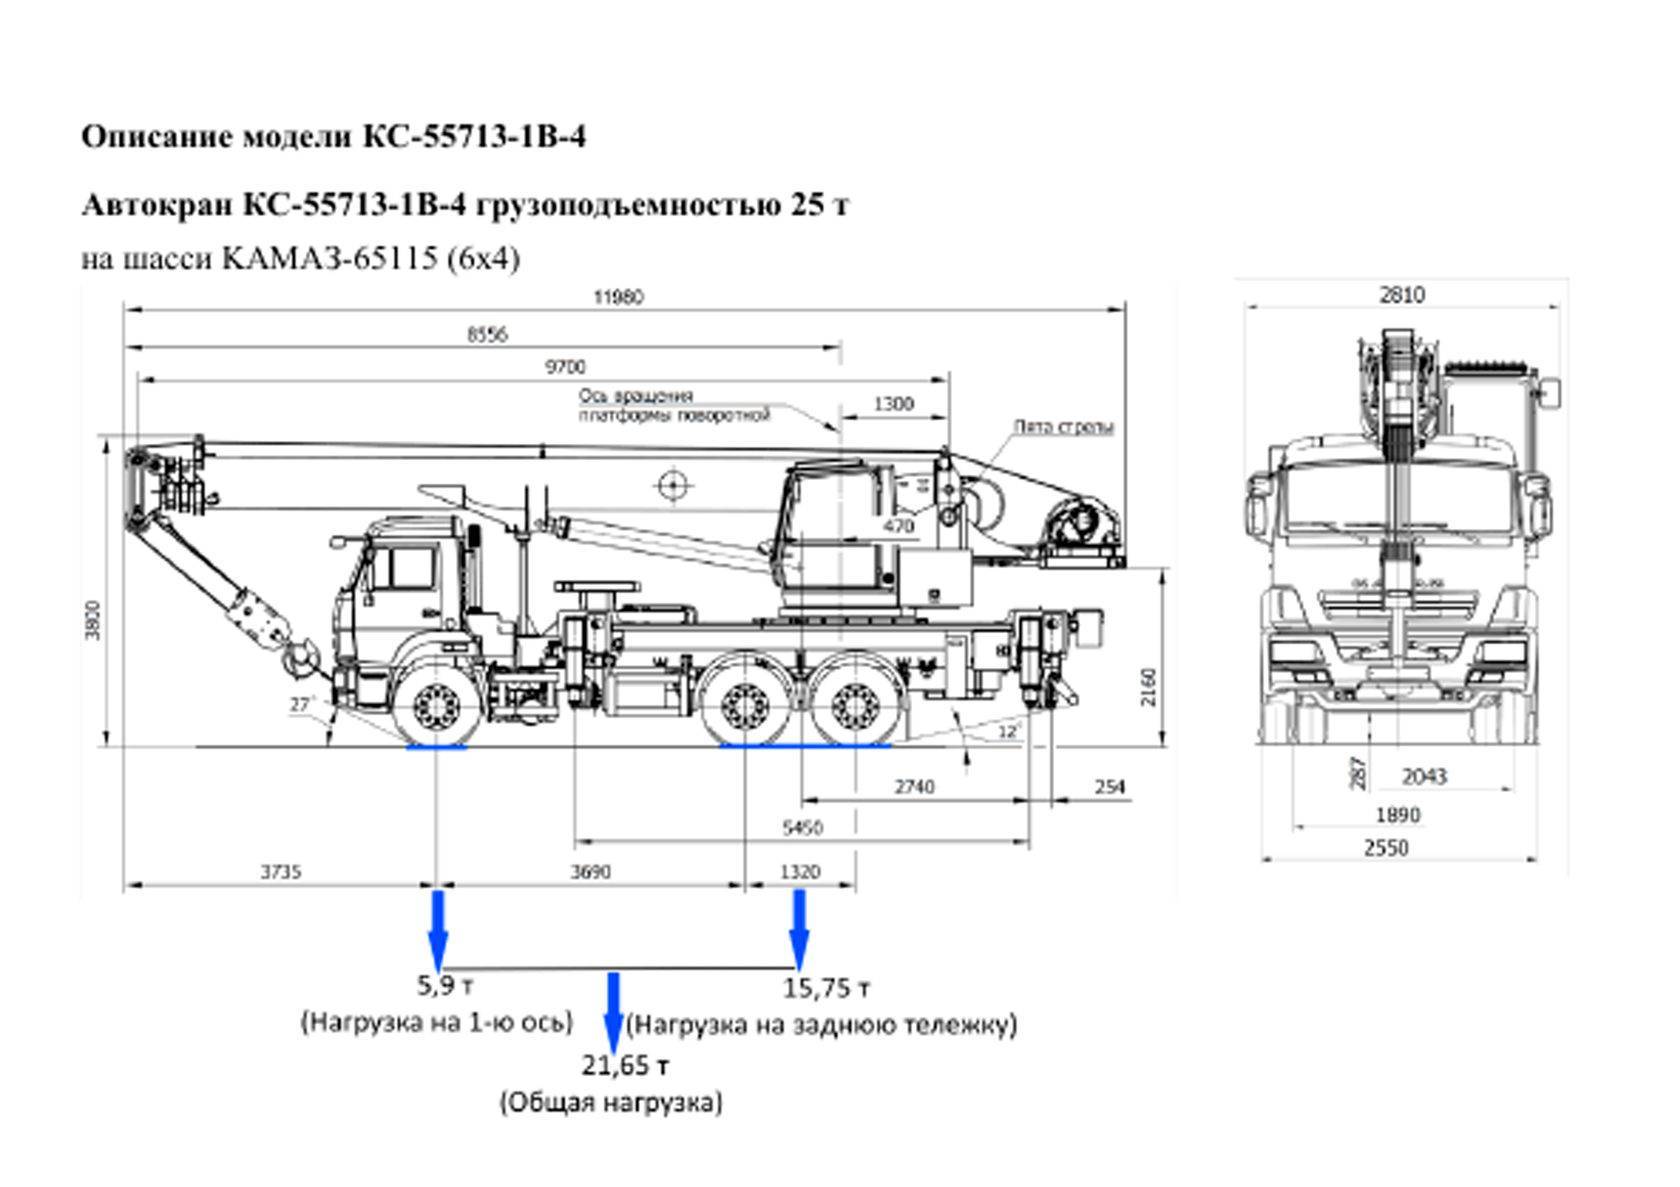 Автокран кс-55713: технические характеристики, описание, параметры, конструкция стрелы, грузоподъемность